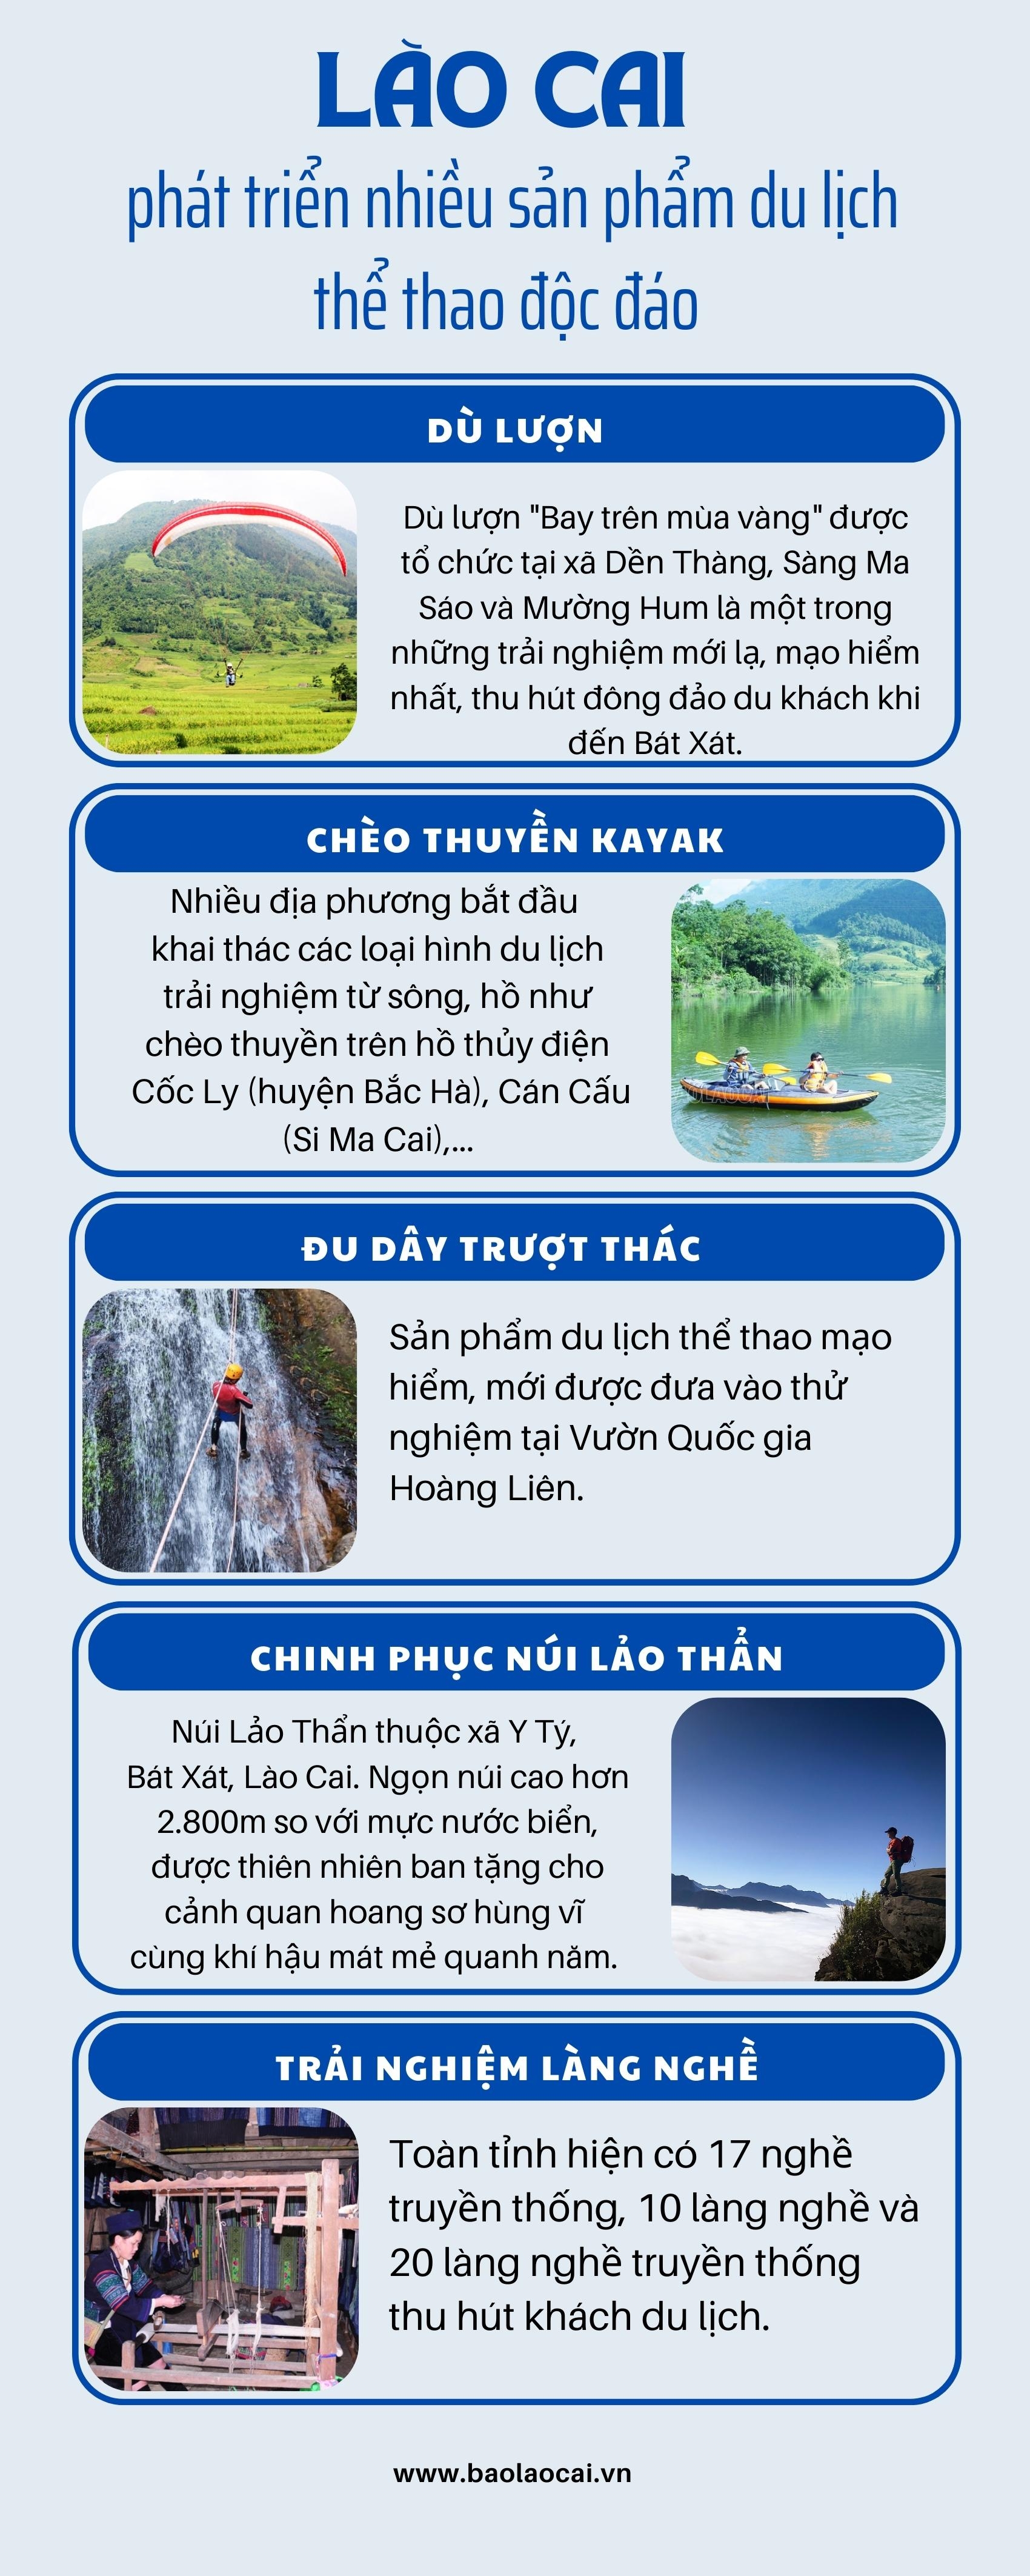 Lào Cai: Nhiều sản phẩm du lịch mới và đặc sắc - Ảnh 3.